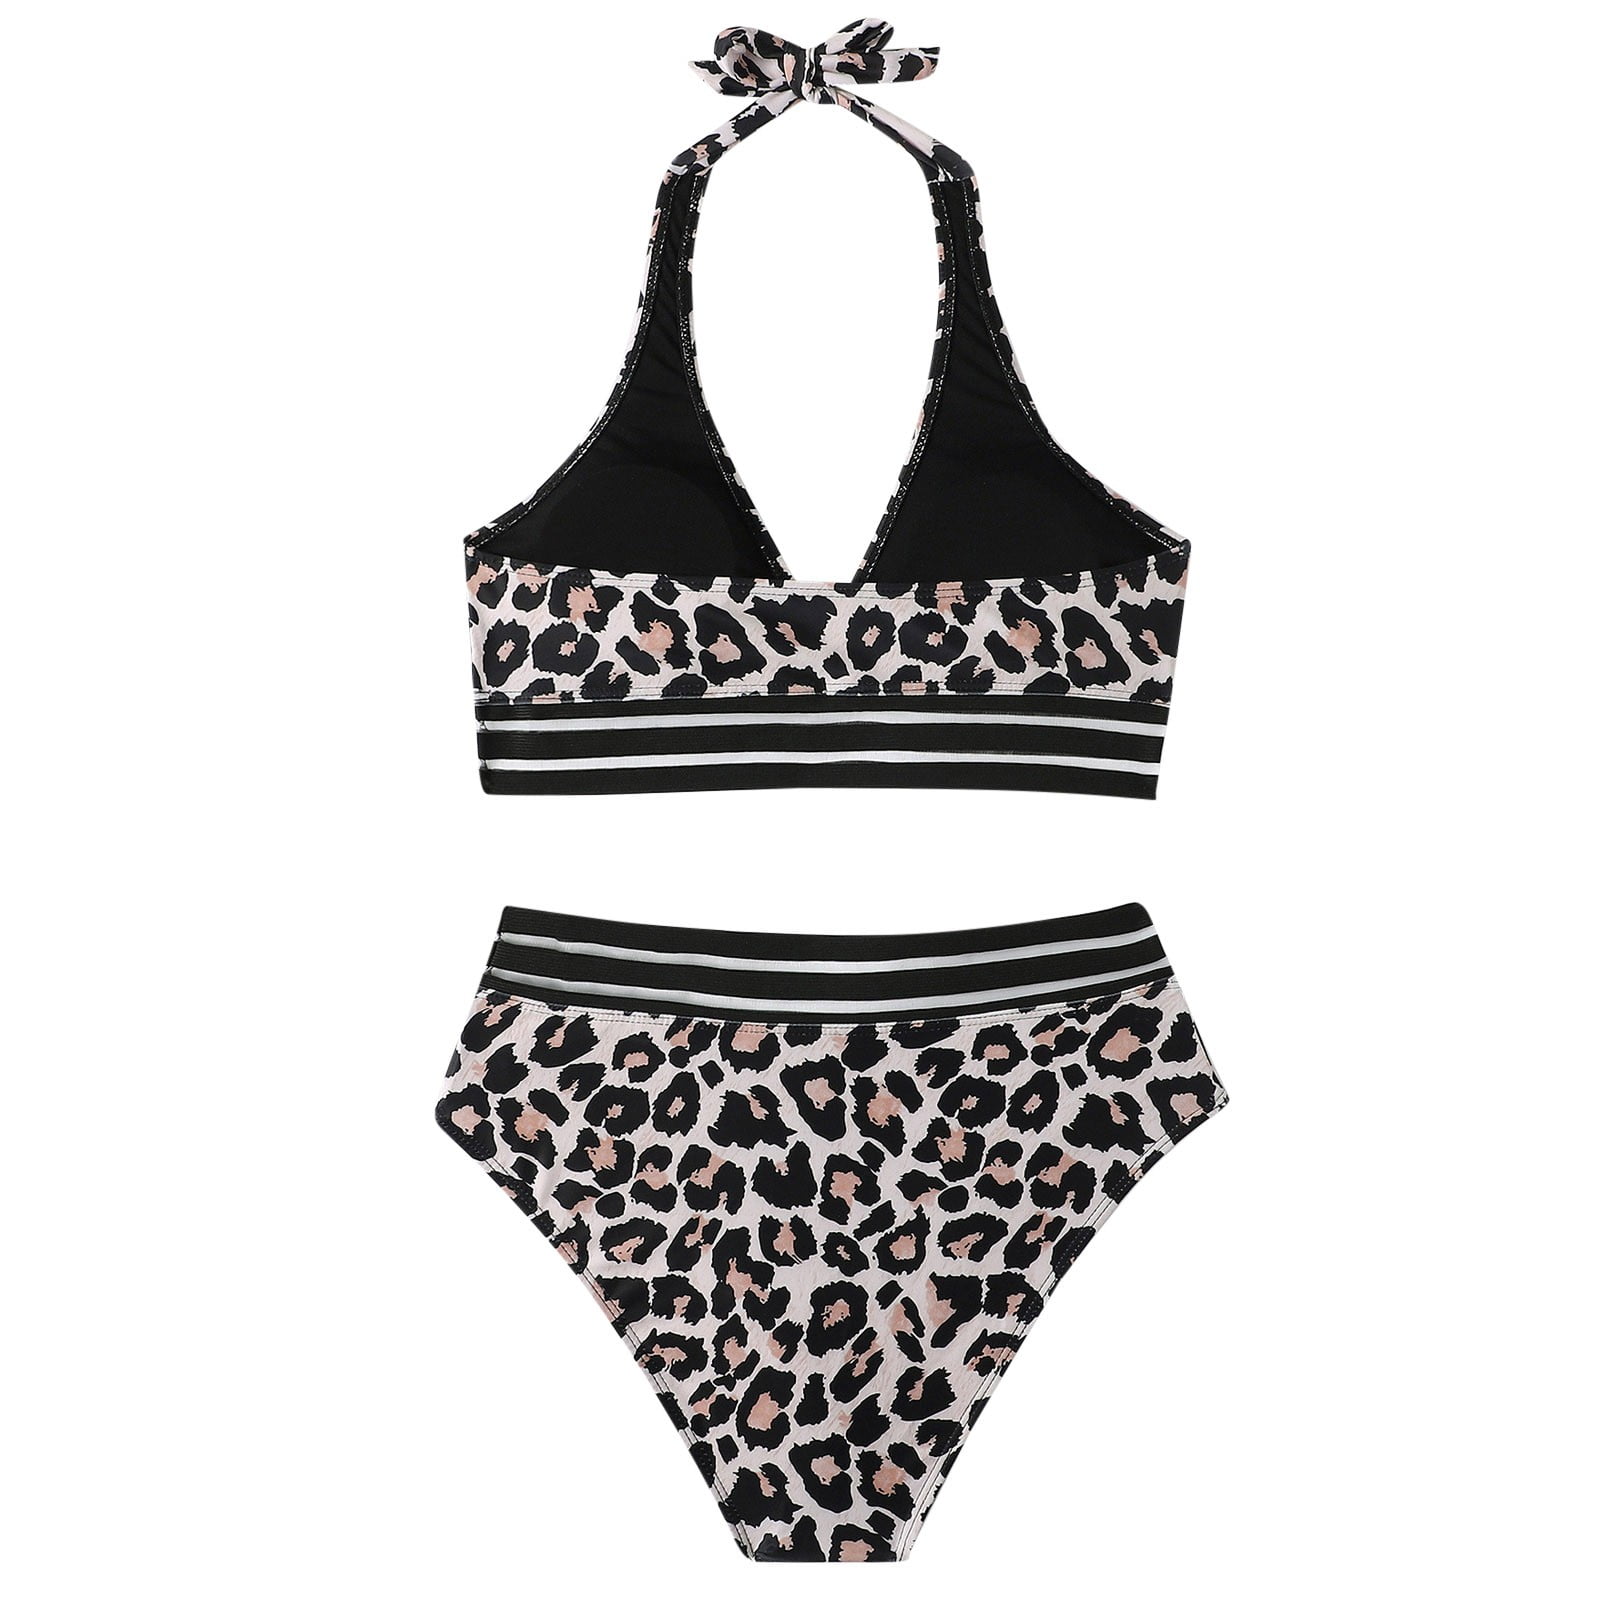 JCXAGR】swimsuit women Women Bandeau Padded Push Up Swimsuit Swimwear Swimwear Bikini Set - Walmart.com